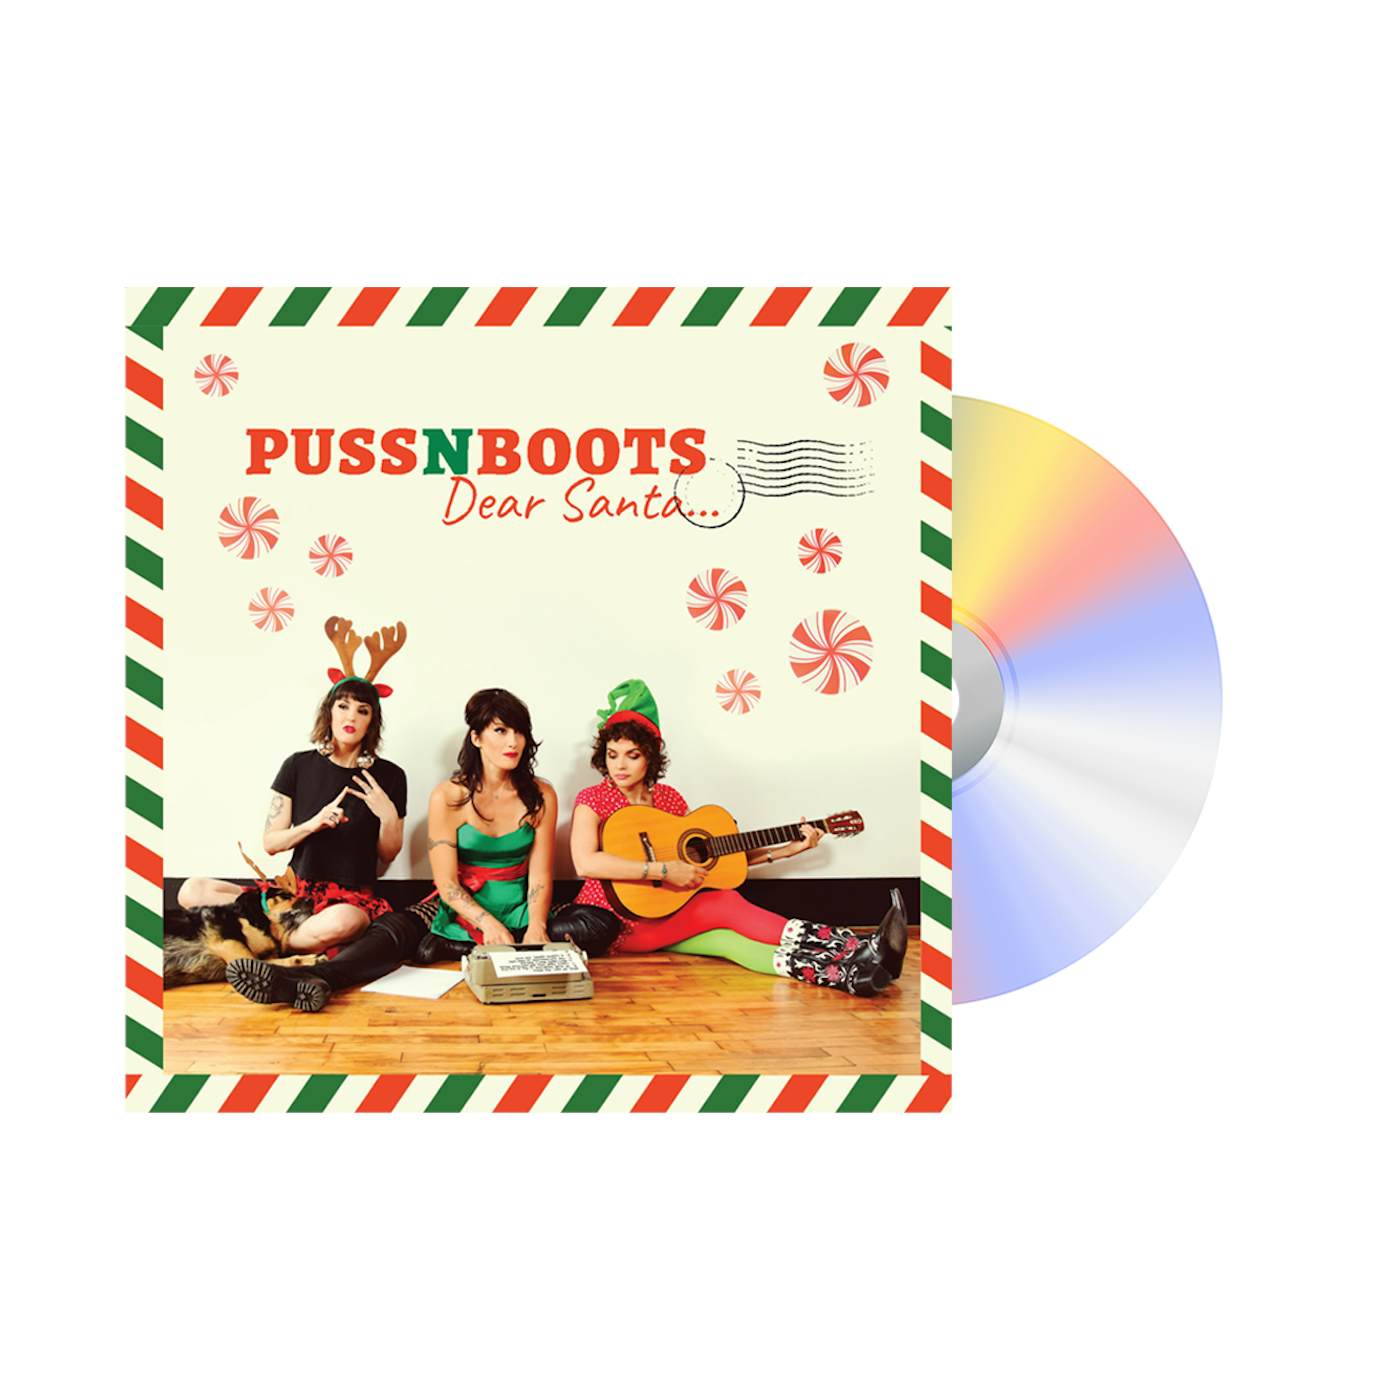 Norah Jones Puss N Boots "Dear Santa..." CD